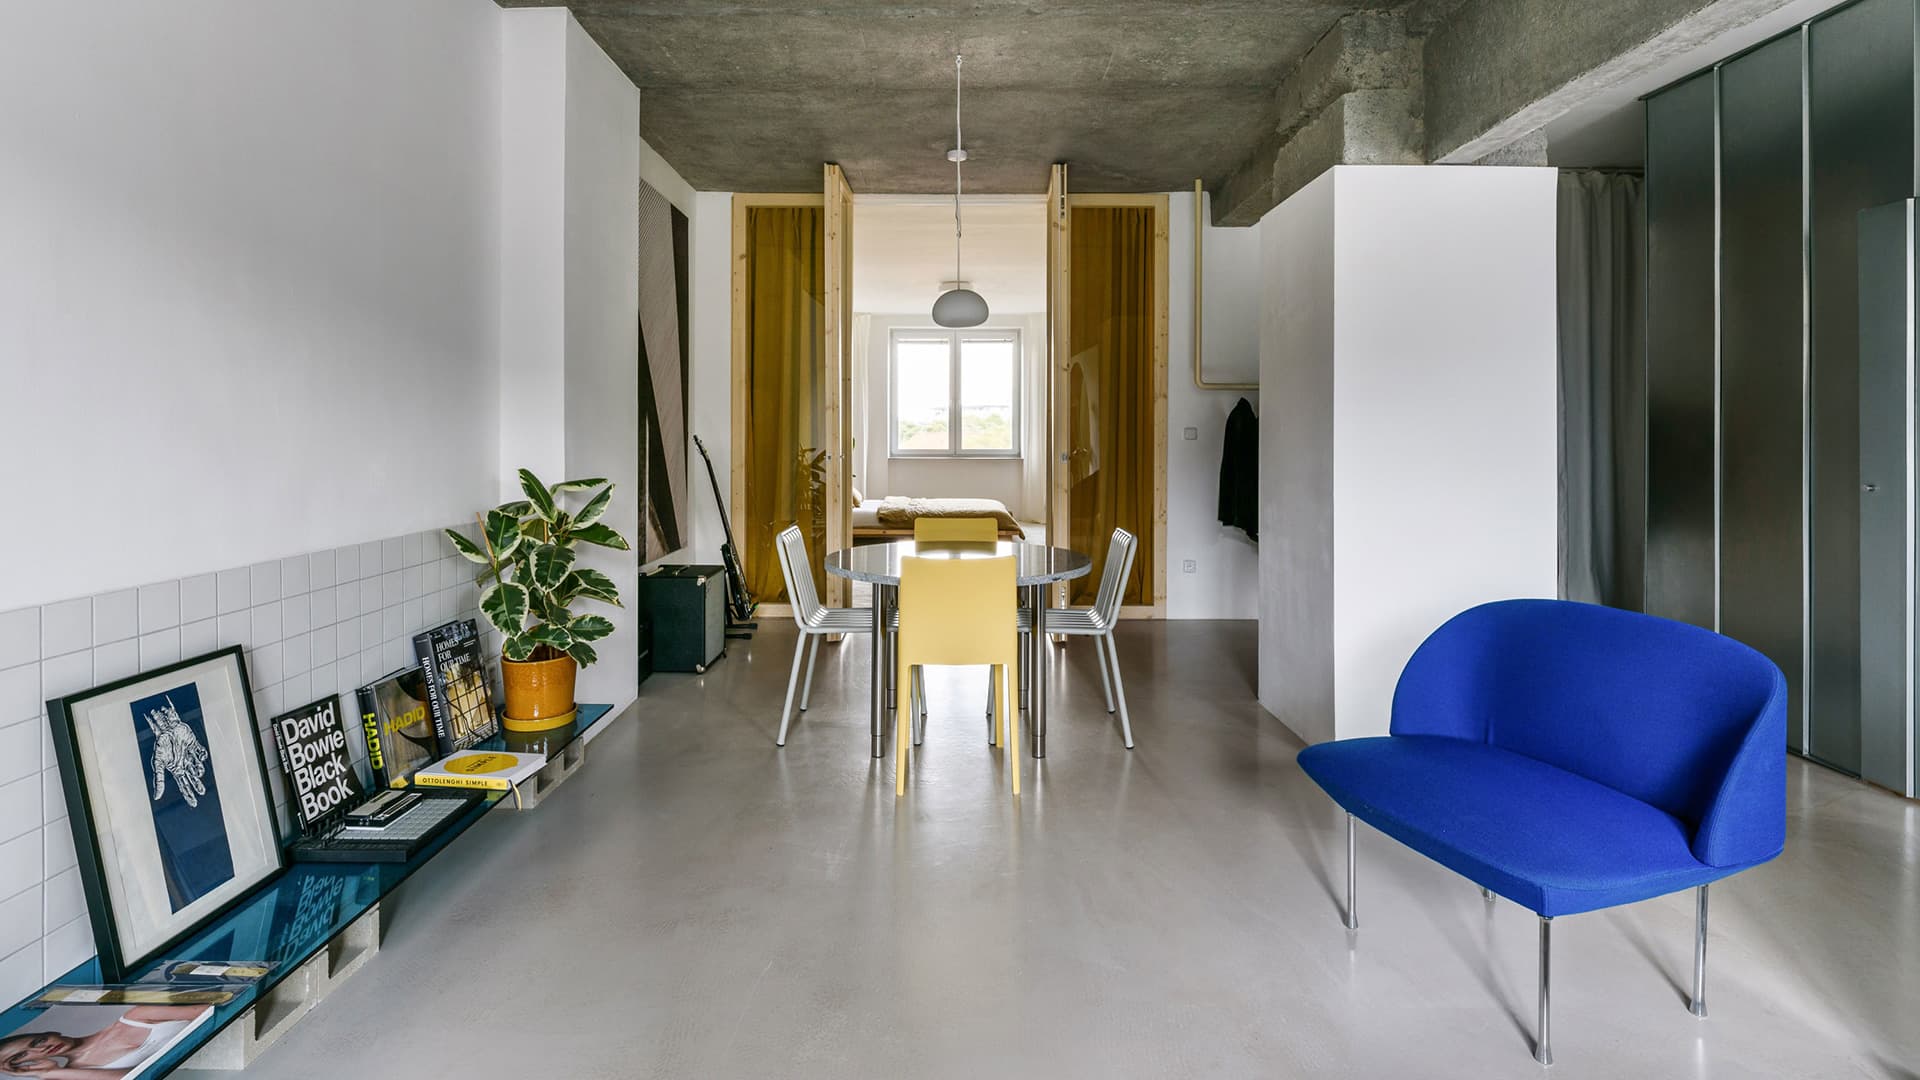 Квартира-студия с круглым проемом в стене — проект архитектора Алана Прекопа